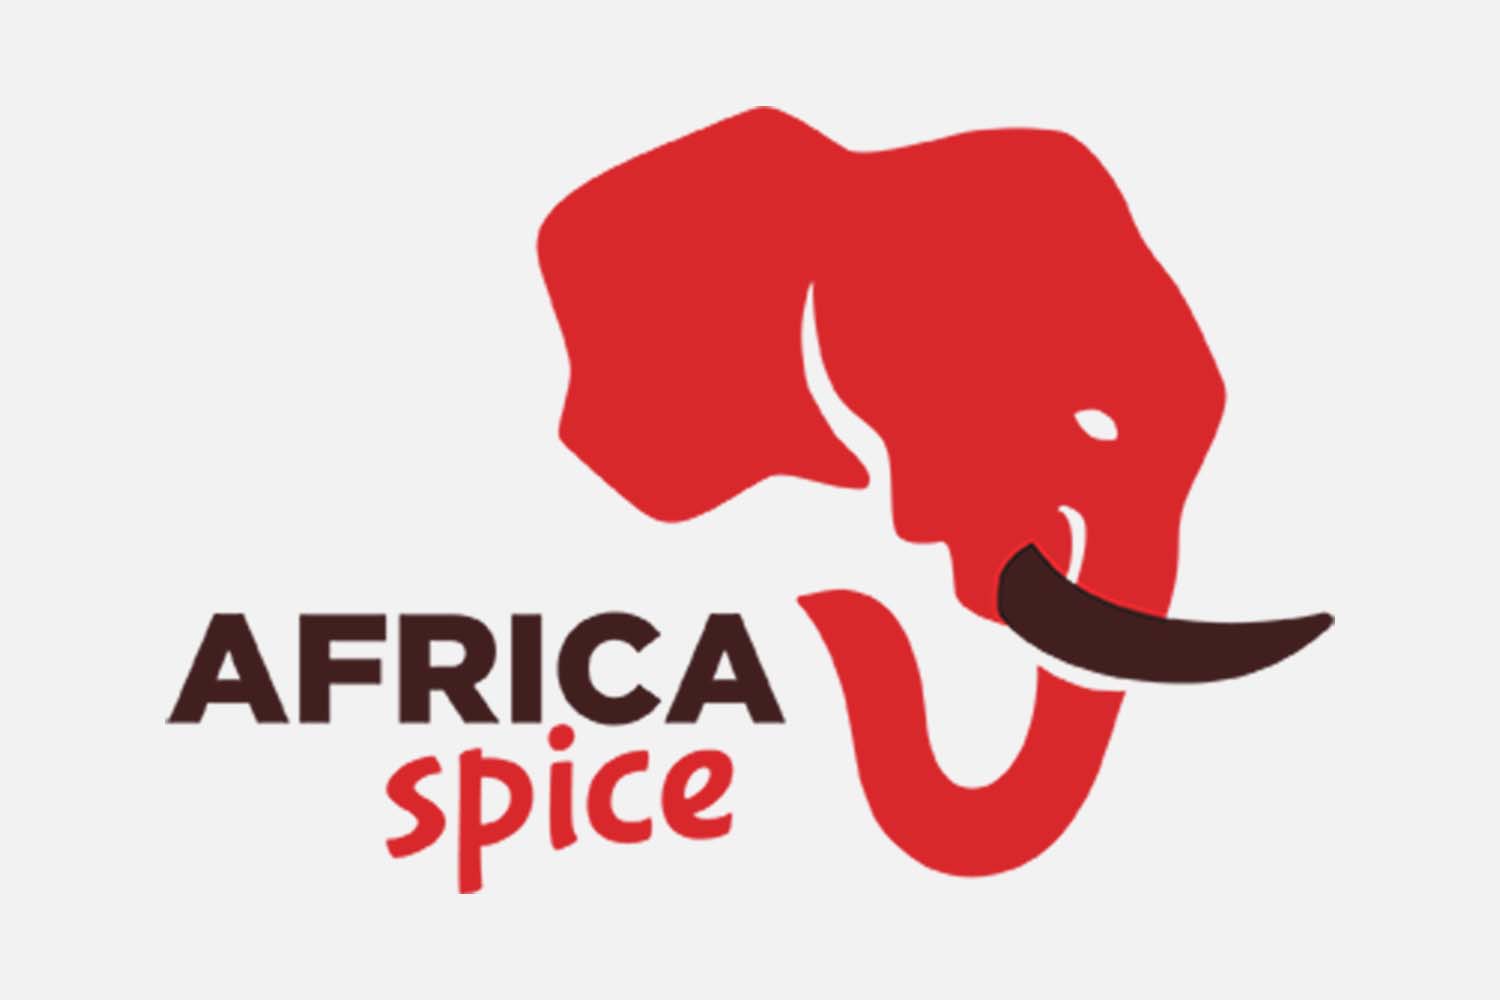 REFERENZEN_LOGO_African_spice